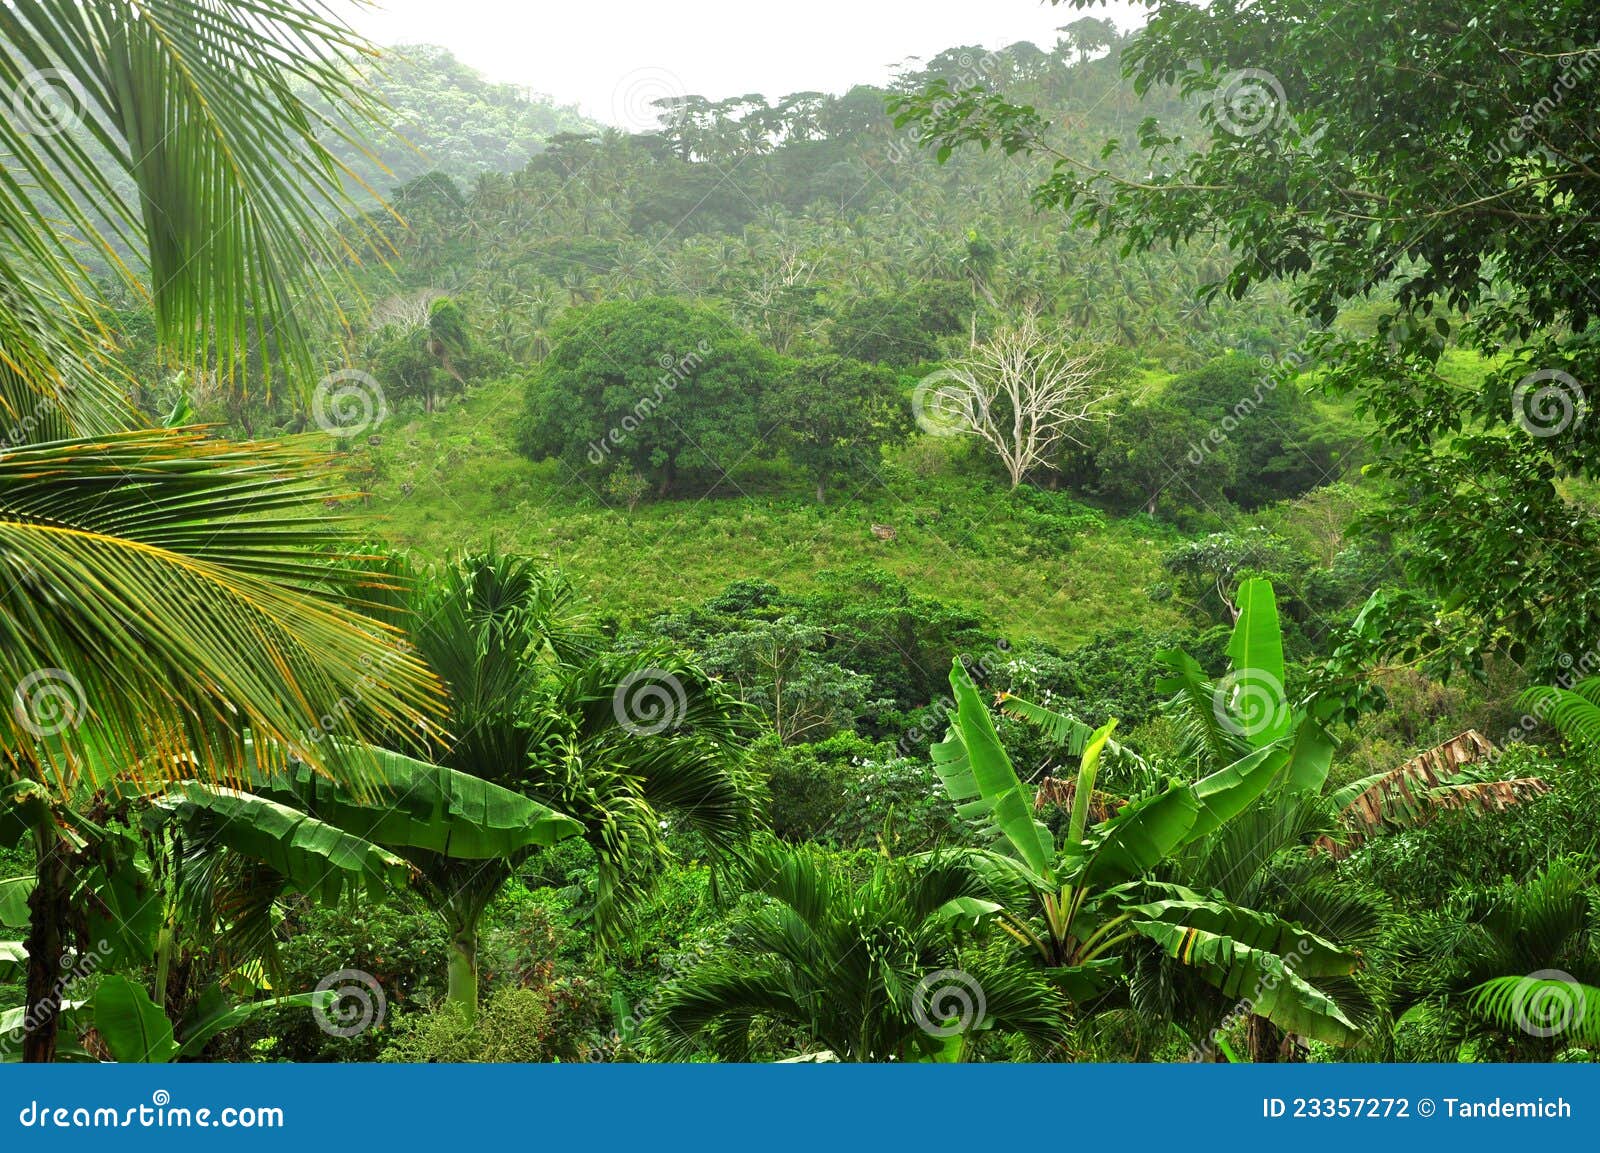 Selva en la República Dominicana. Selva - selva tropical en la República Dominicana